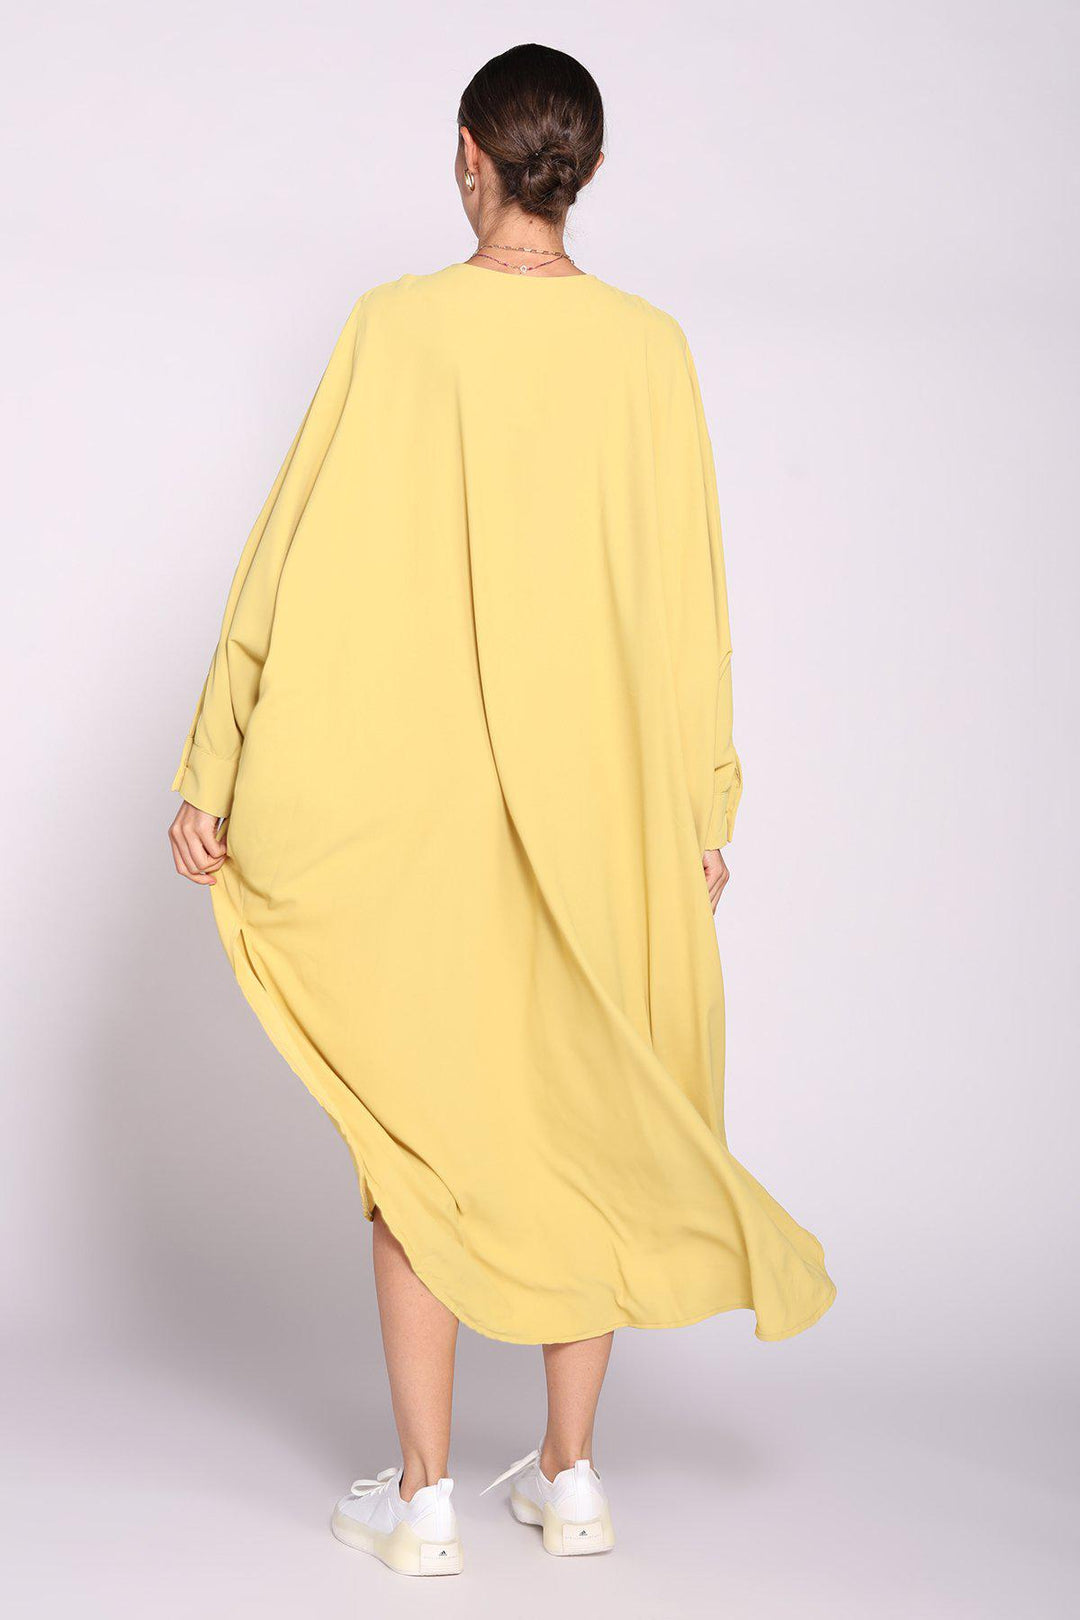 גלביה אדורה בצבע צהוב - Dana Sidi